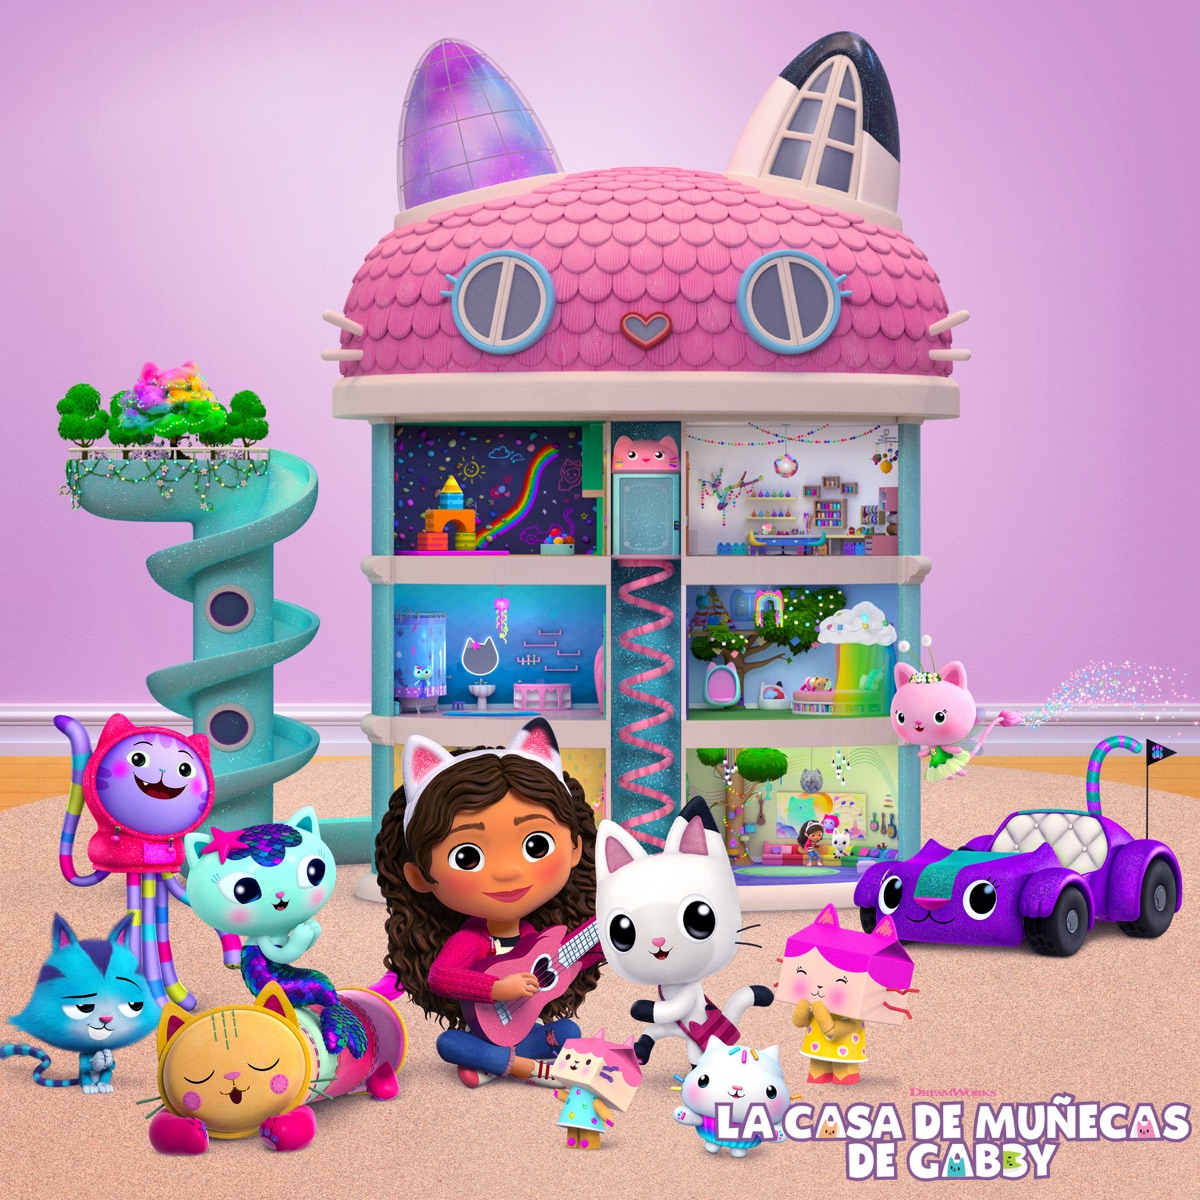 La Casa de Muñecas de Gabby – La Lista De Reproducción Oficial by Gabby's  Dollhouse on Apple Music